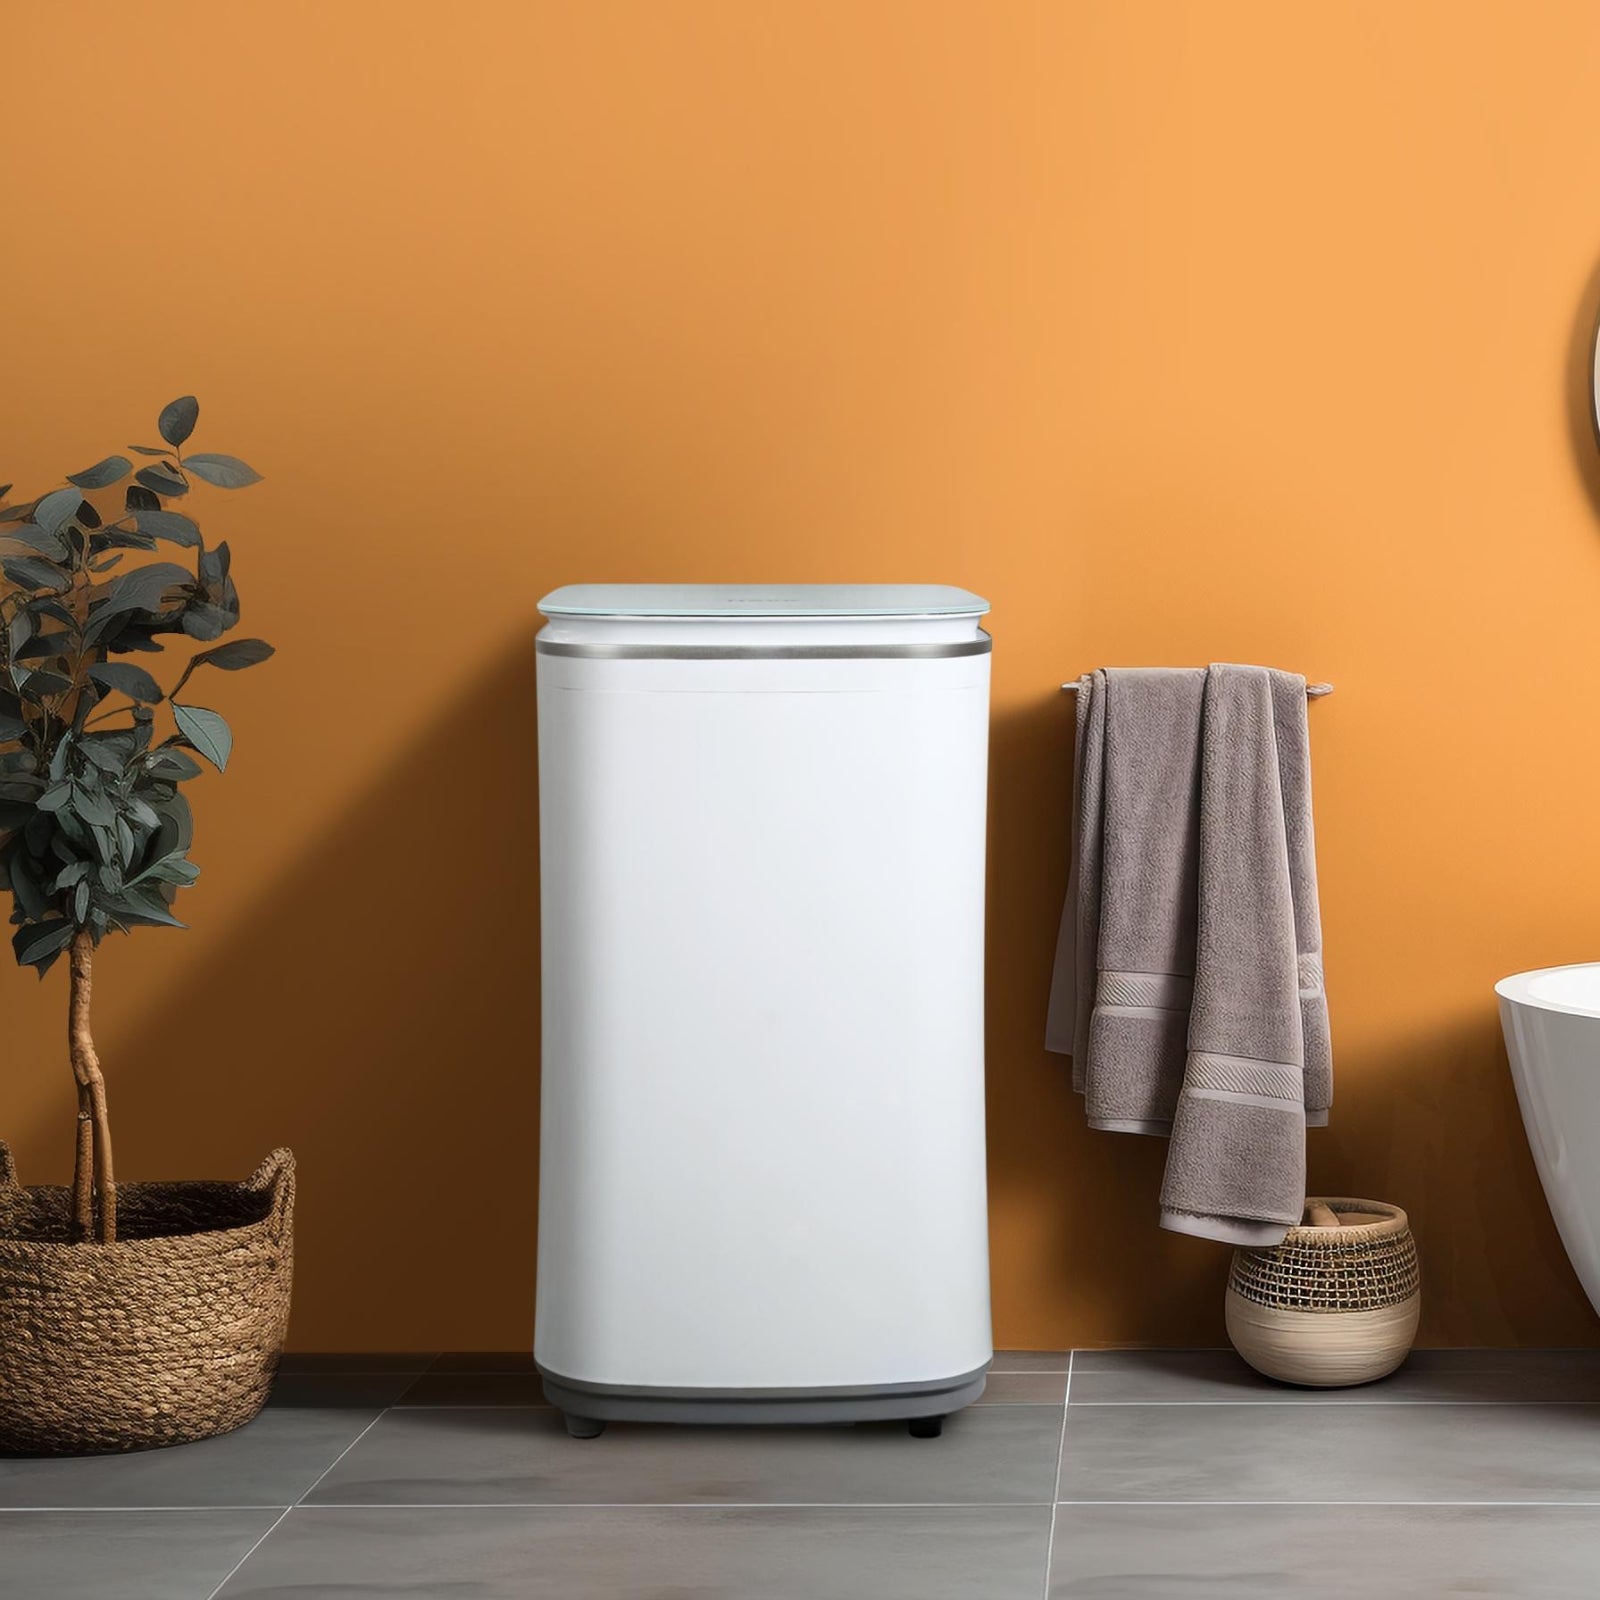 Go-clean's HAVA toppmatad liten tvättmaskin i ett badrum med orange väggar, intill en korg med en växt och hängande handdukar, visar dess kompakta och stilrena design som passar i alla hemmiljöer.